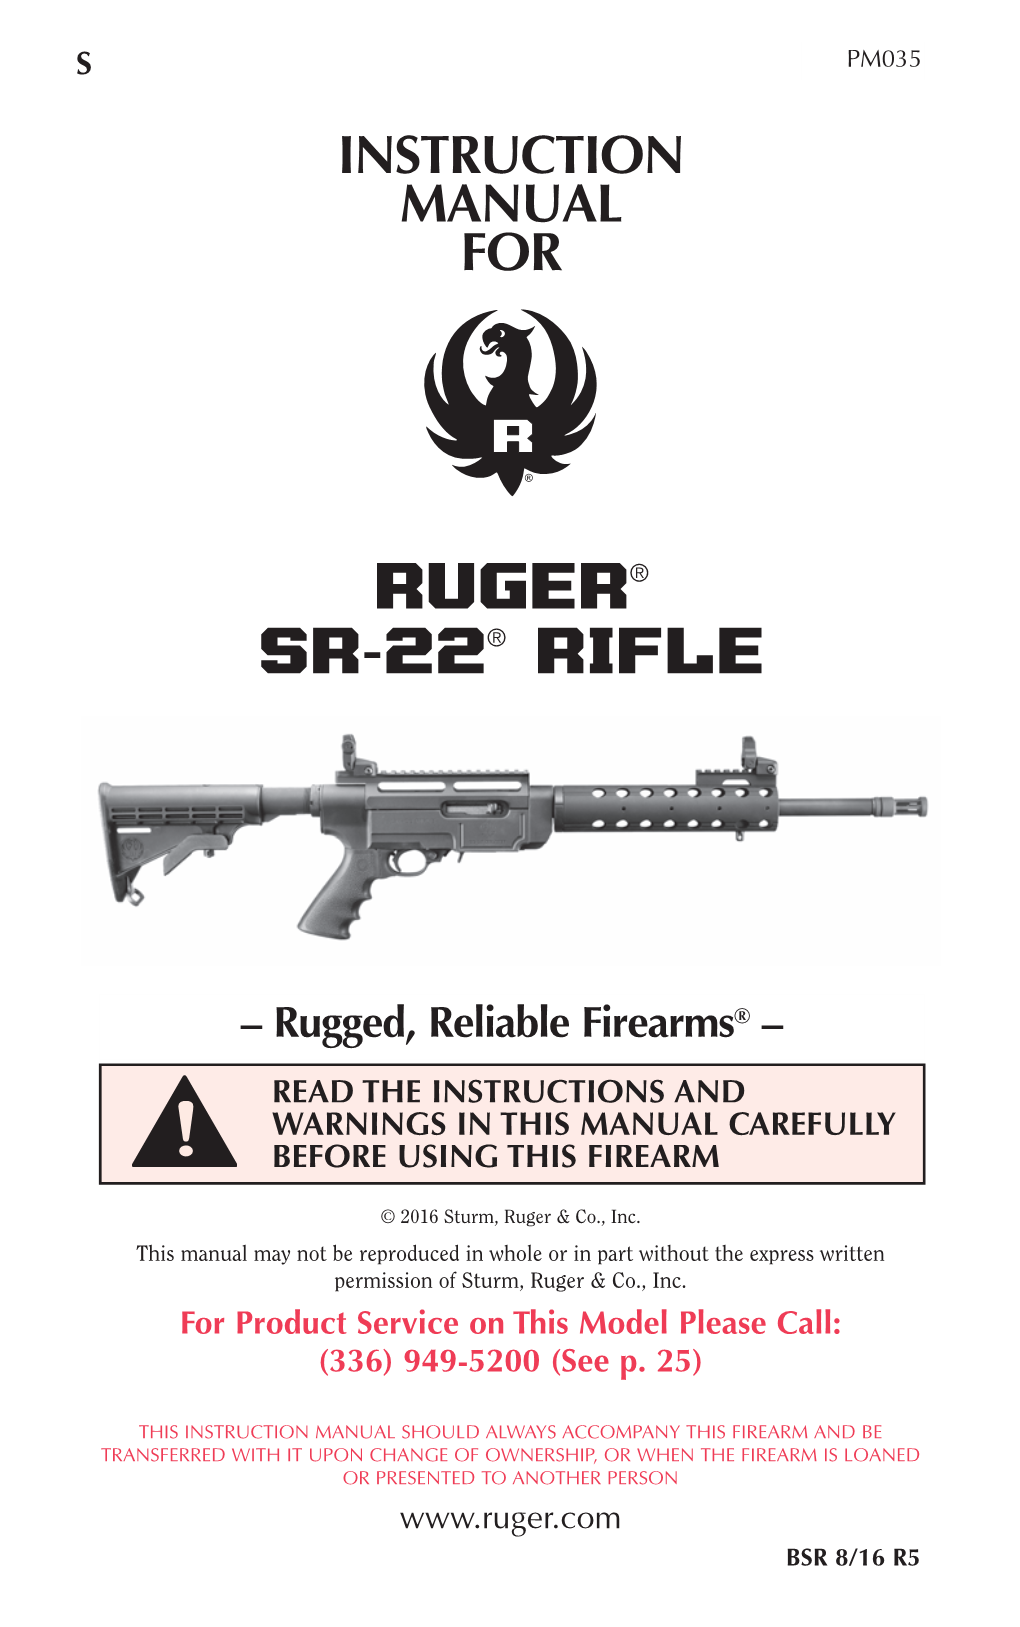 RUGER® SR-22® RIFLE Properly